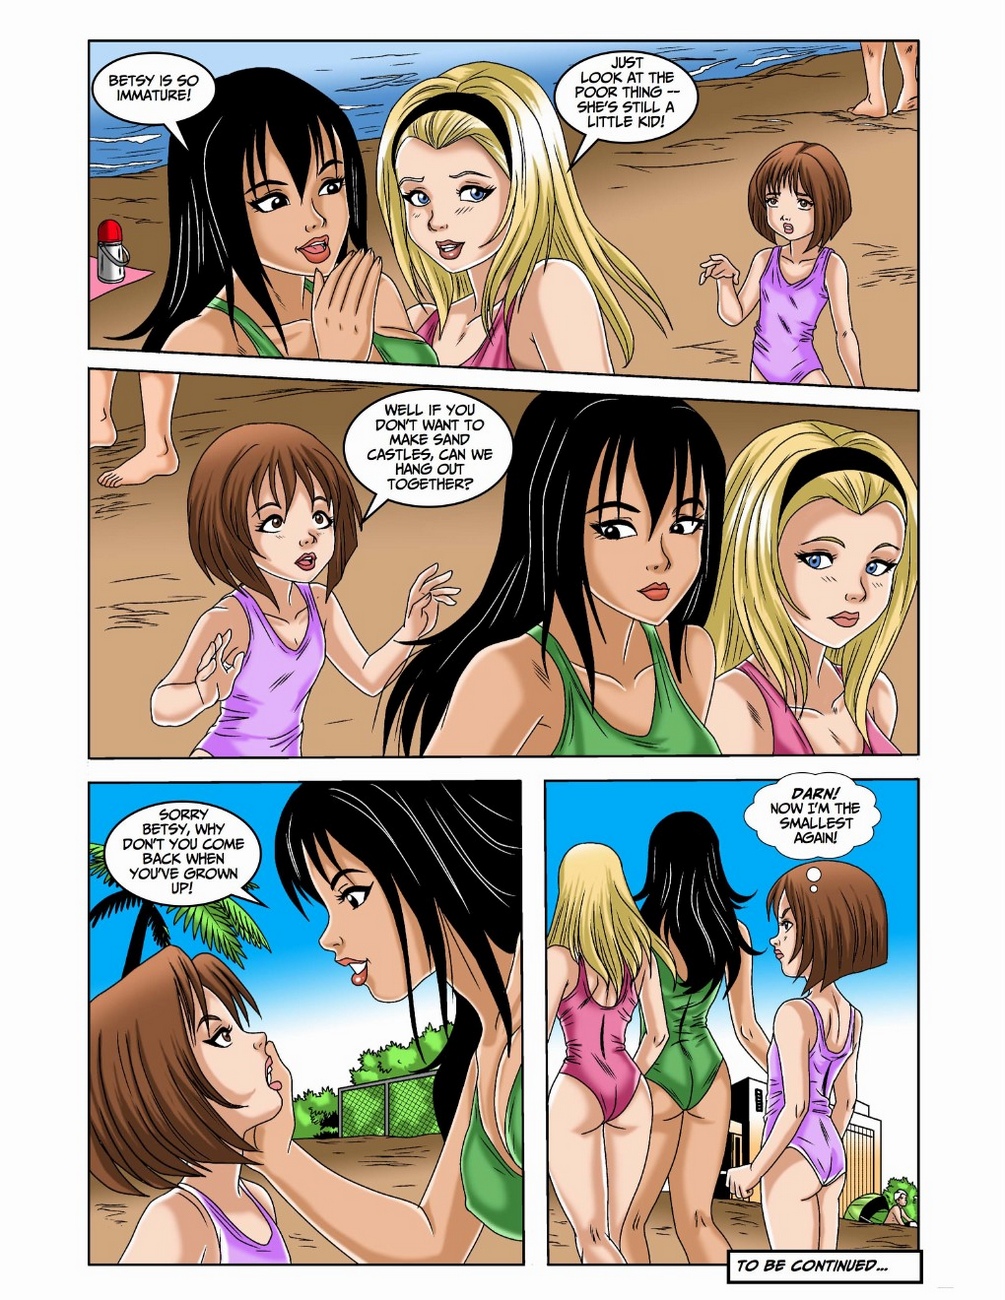 The Puberty Fairies 1 Comic Porn Hd Porn Comics